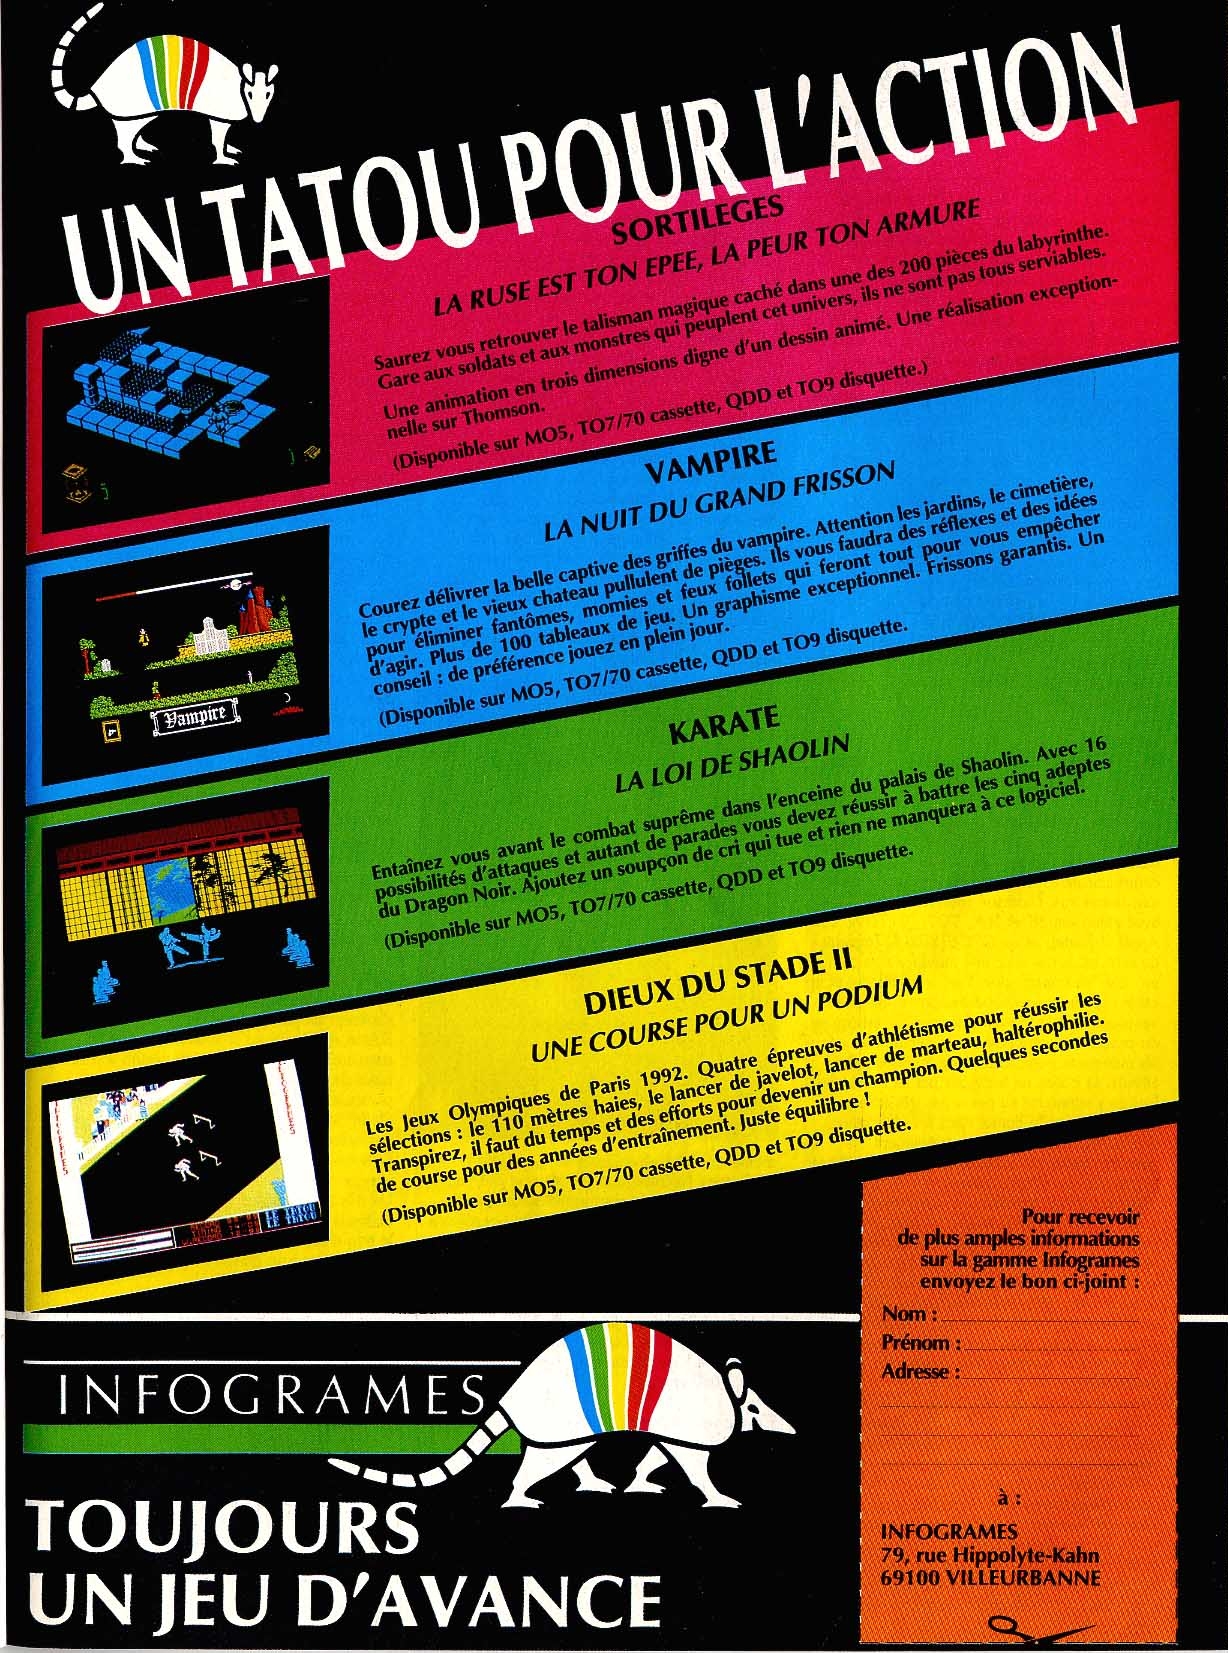 Une publicité pour le jeu Karaté parue dans la revue TILT de septembre 1986